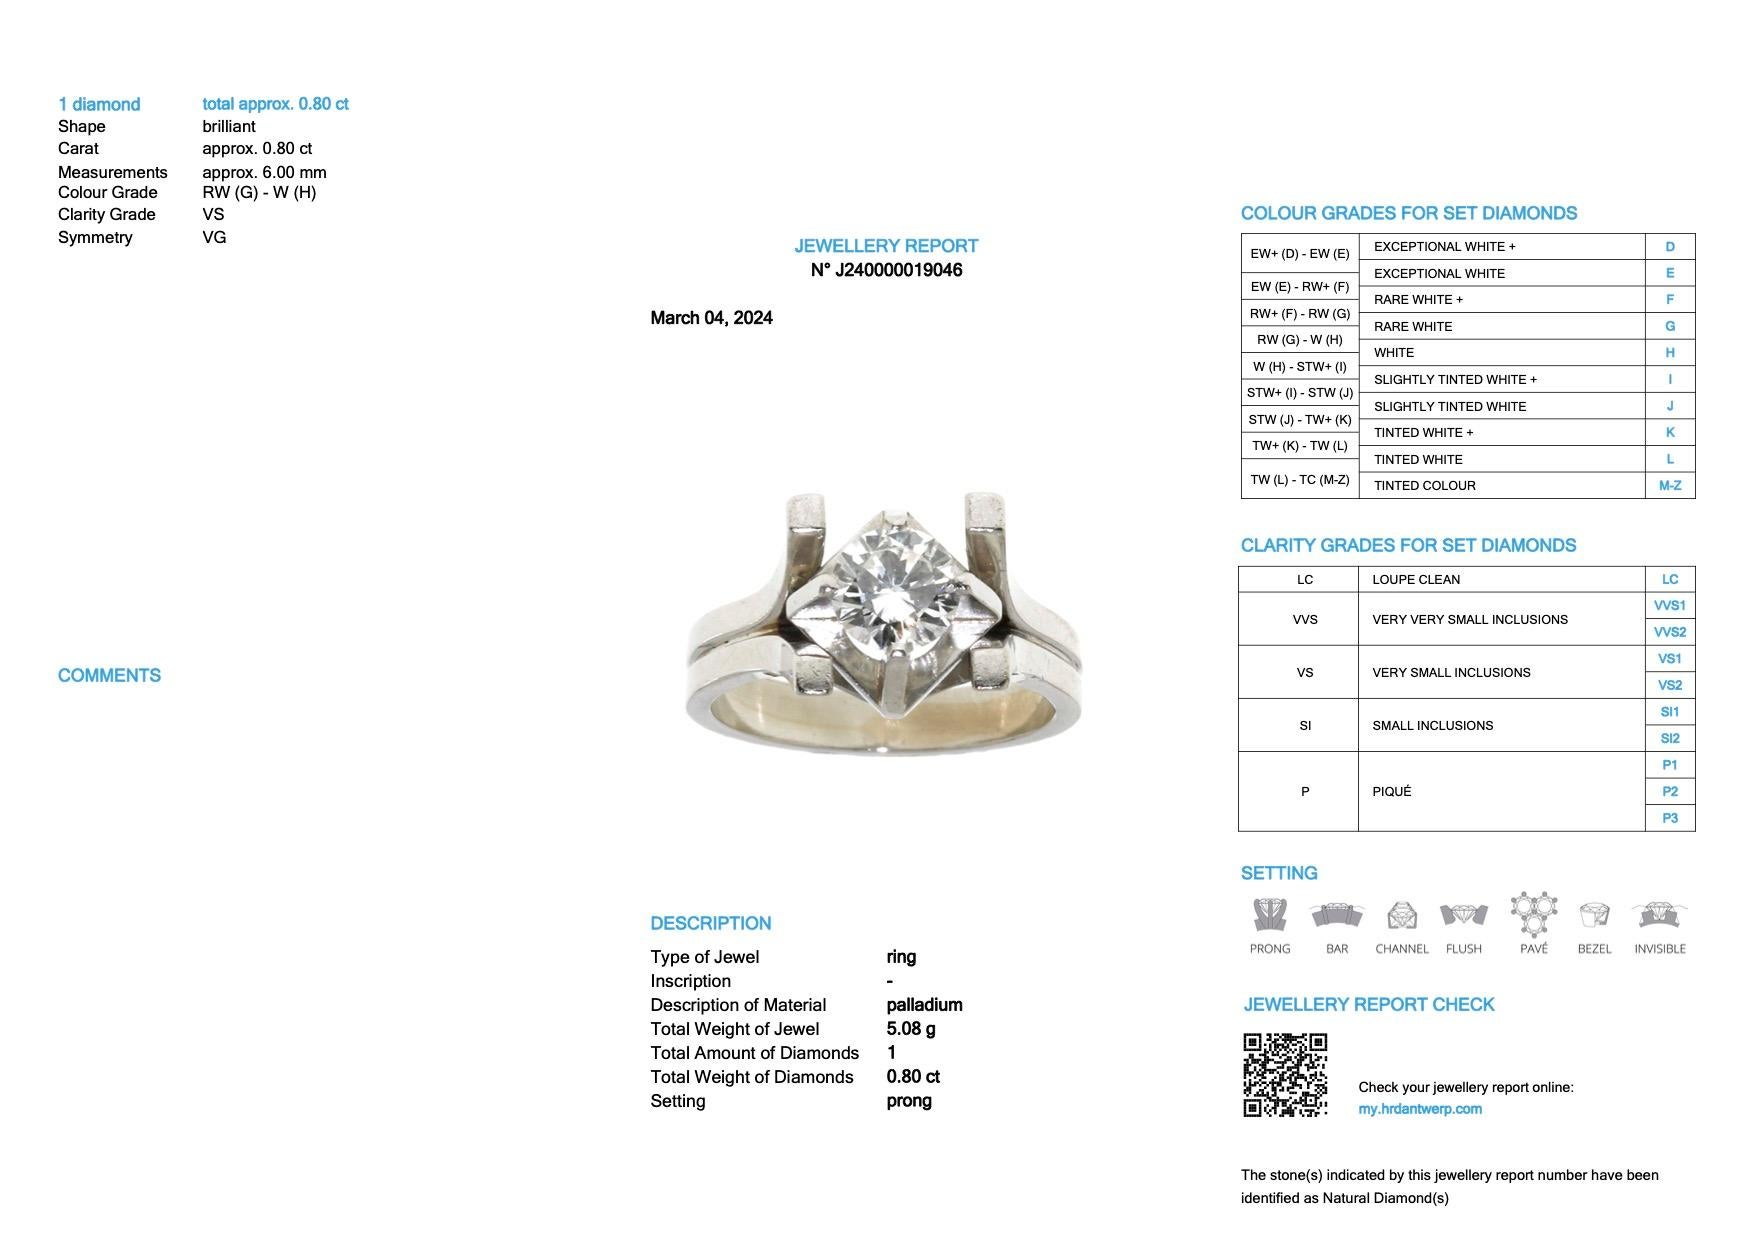 Der HRD-zertifizierte Solitärring aus Palladium und Diamanten ist der Inbegriff von unaufdringlichem Luxus und zeitloser Raffinesse. Dieser Ring ist aus glänzendem Palladium gefertigt, einem Metall, das für seine Langlebigkeit und Reinheit bekannt